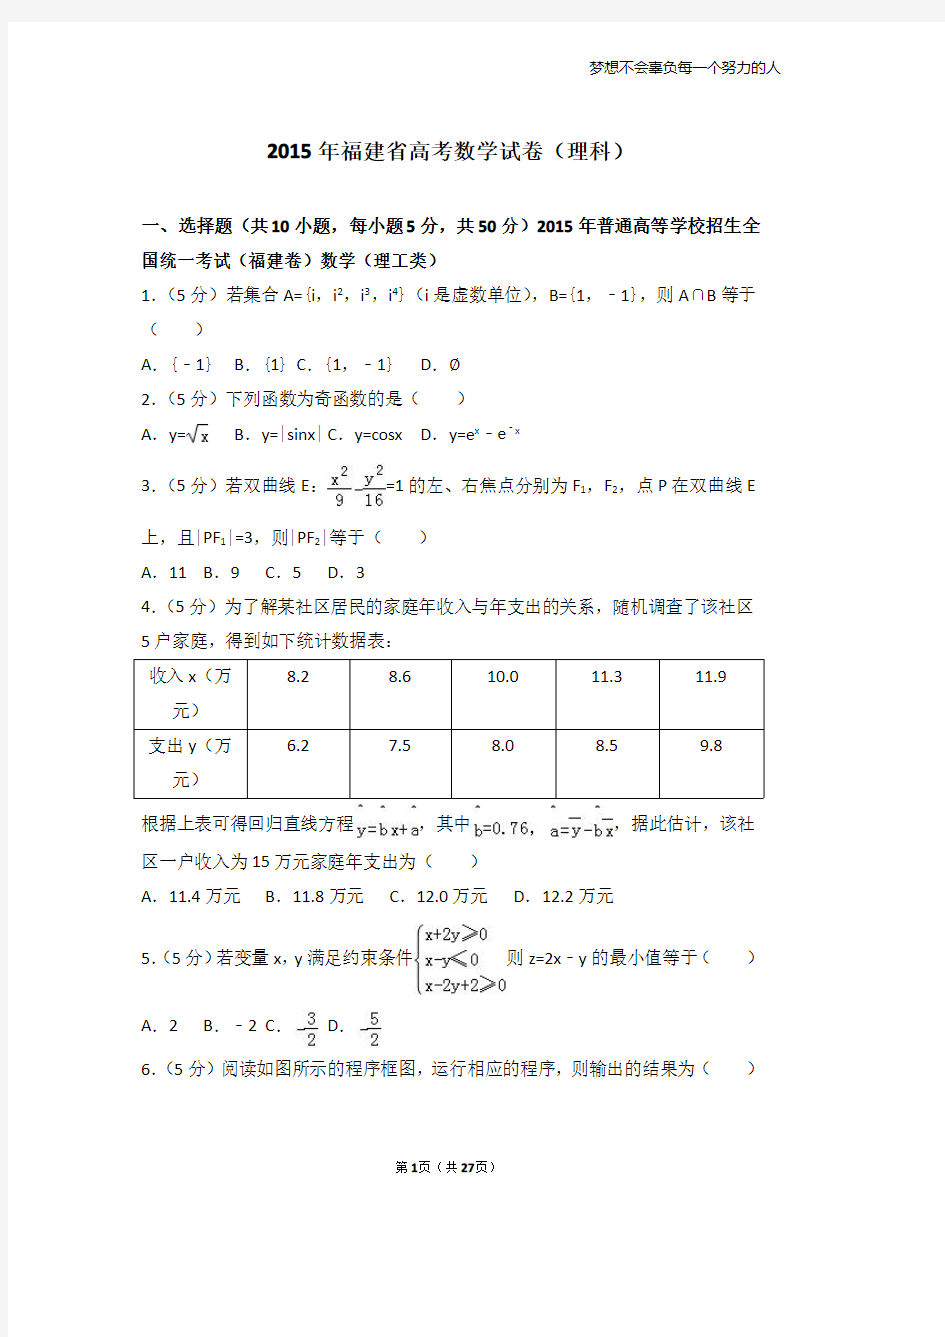 52015-2015年福建省高考数学试卷(理科)